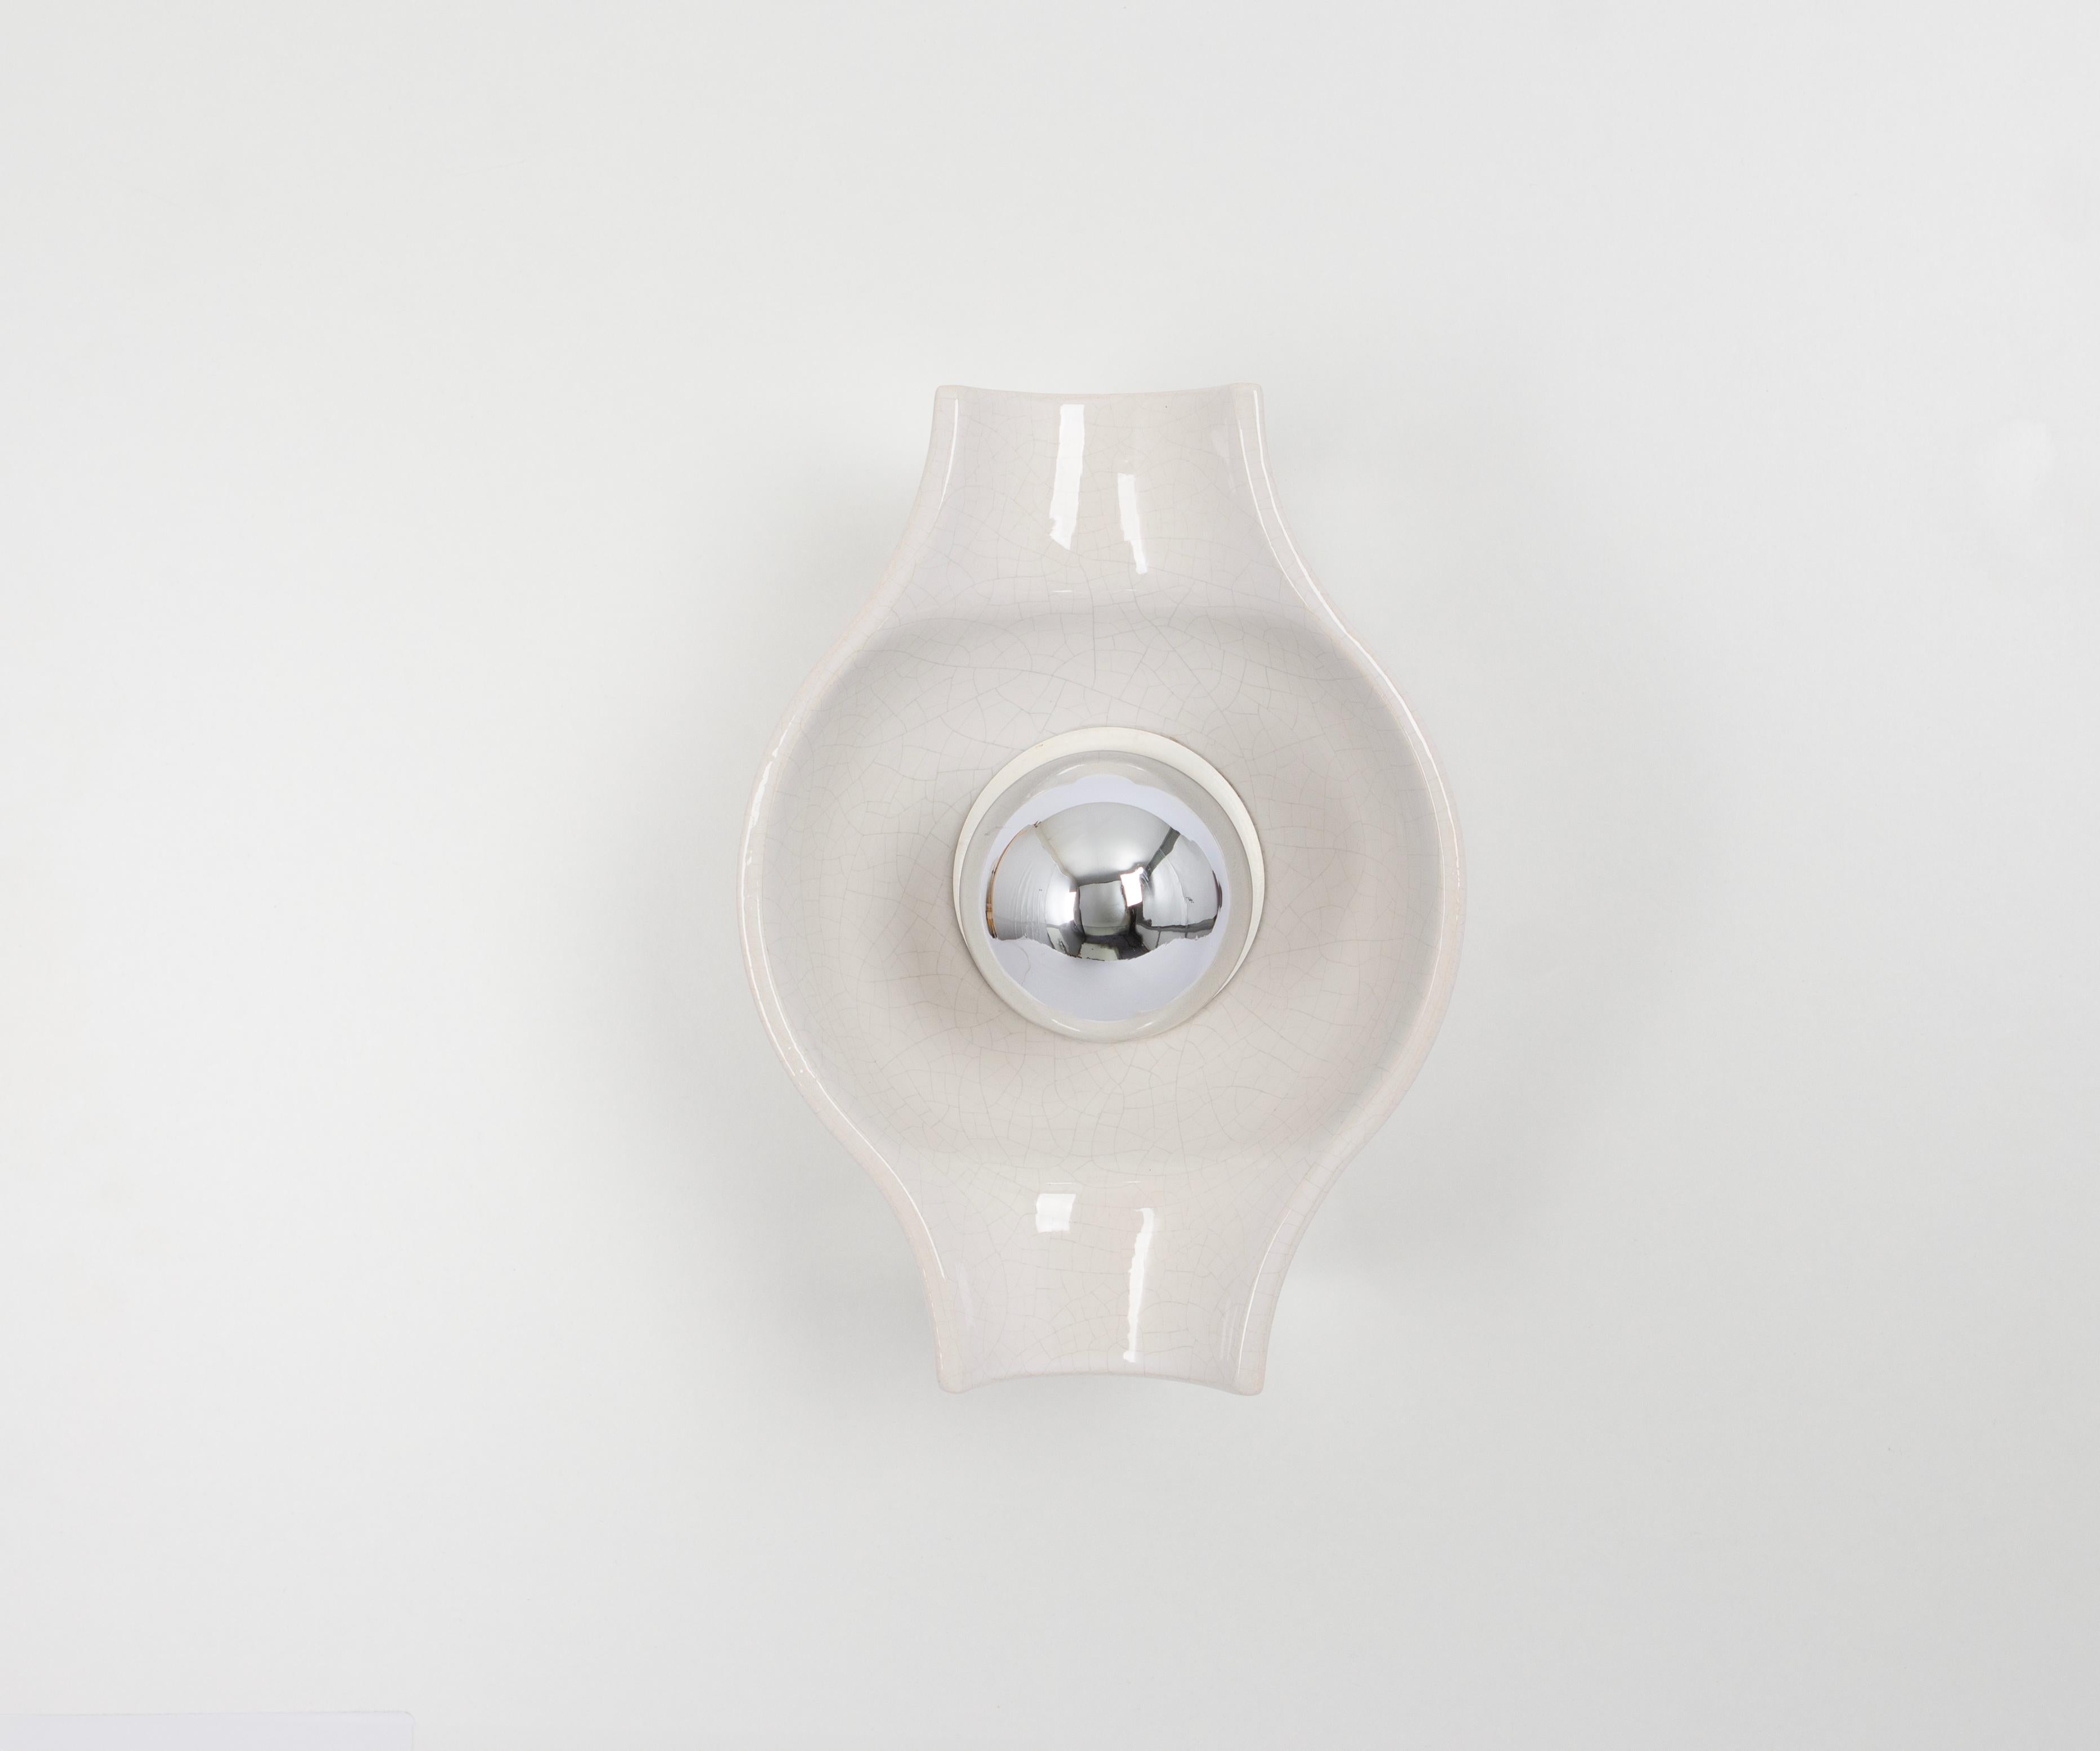 Weiße Keramik-Wandleuchte Sputnik, entworfen von Cari Zalloni Deutschland, 1970er Jahre

Schwere Qualität und in sehr gutem Zustand. Gereinigt, gut verkabelt und einsatzbereit. 

Die Leuchte benötigt 1 x E27 Standard-Glühbirne mit je 100W max.